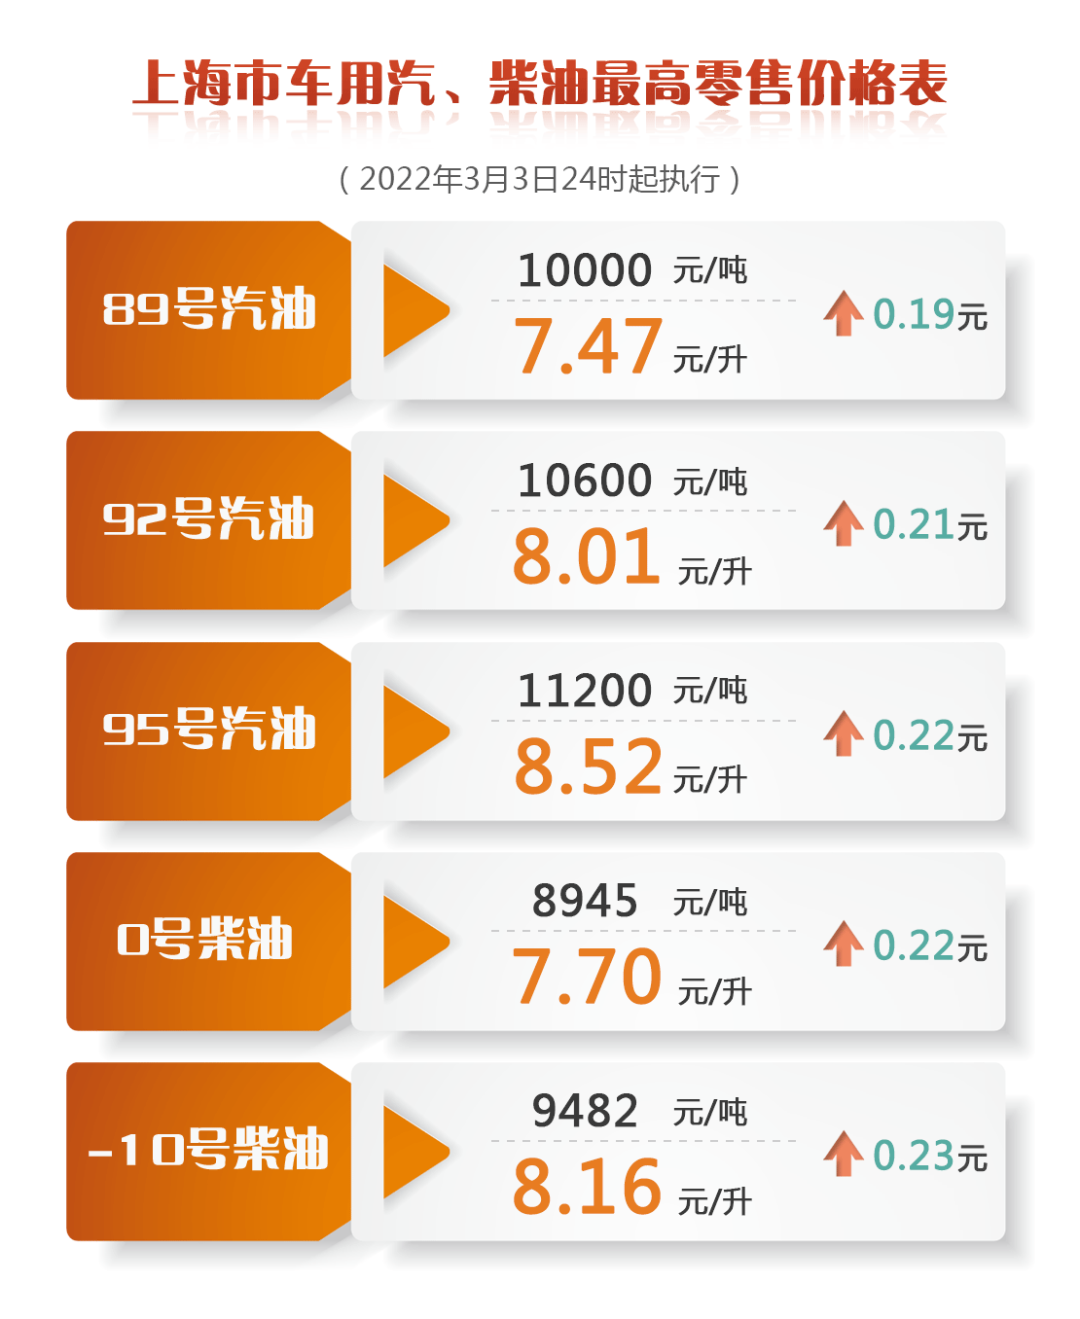 上海成品油价3月4日零点起上调